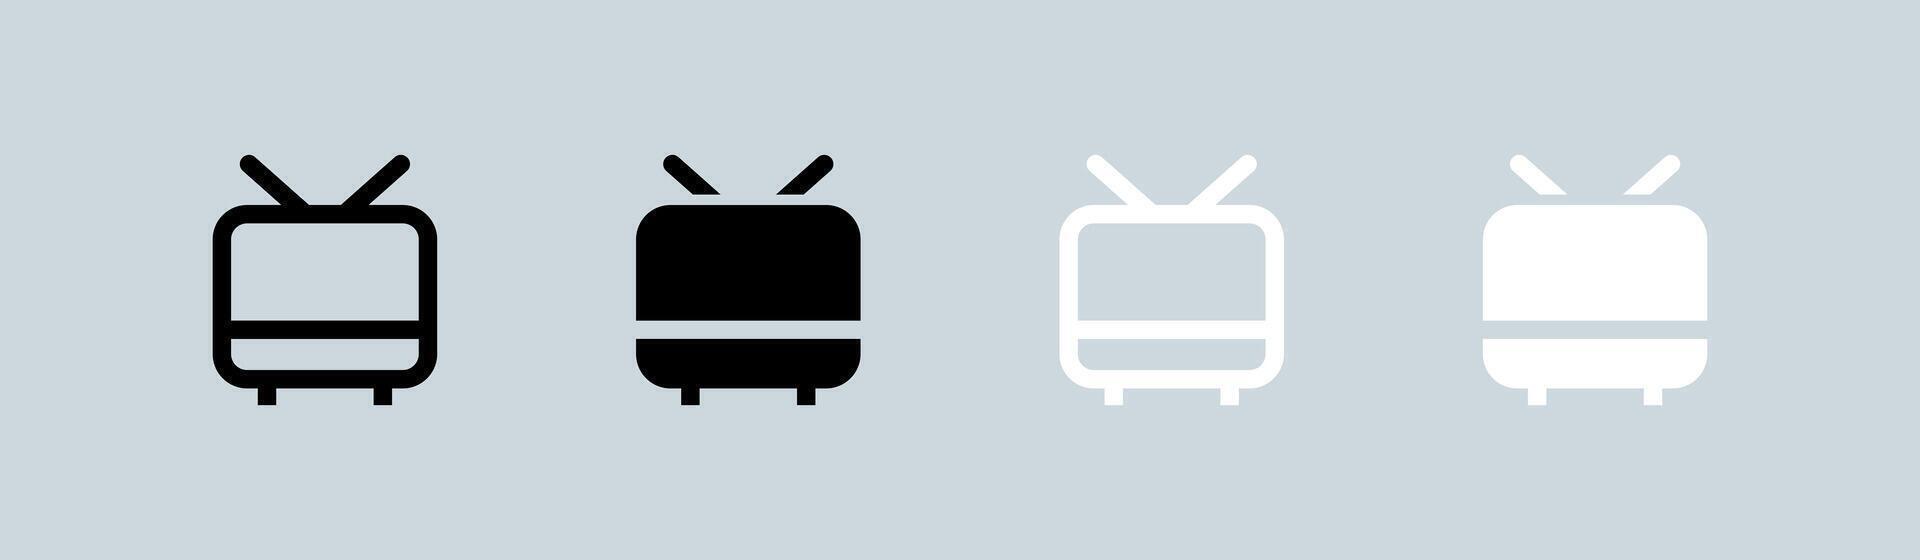 televisão ícone conjunto dentro Preto e branco. retro televisão sinais ilustração. vetor